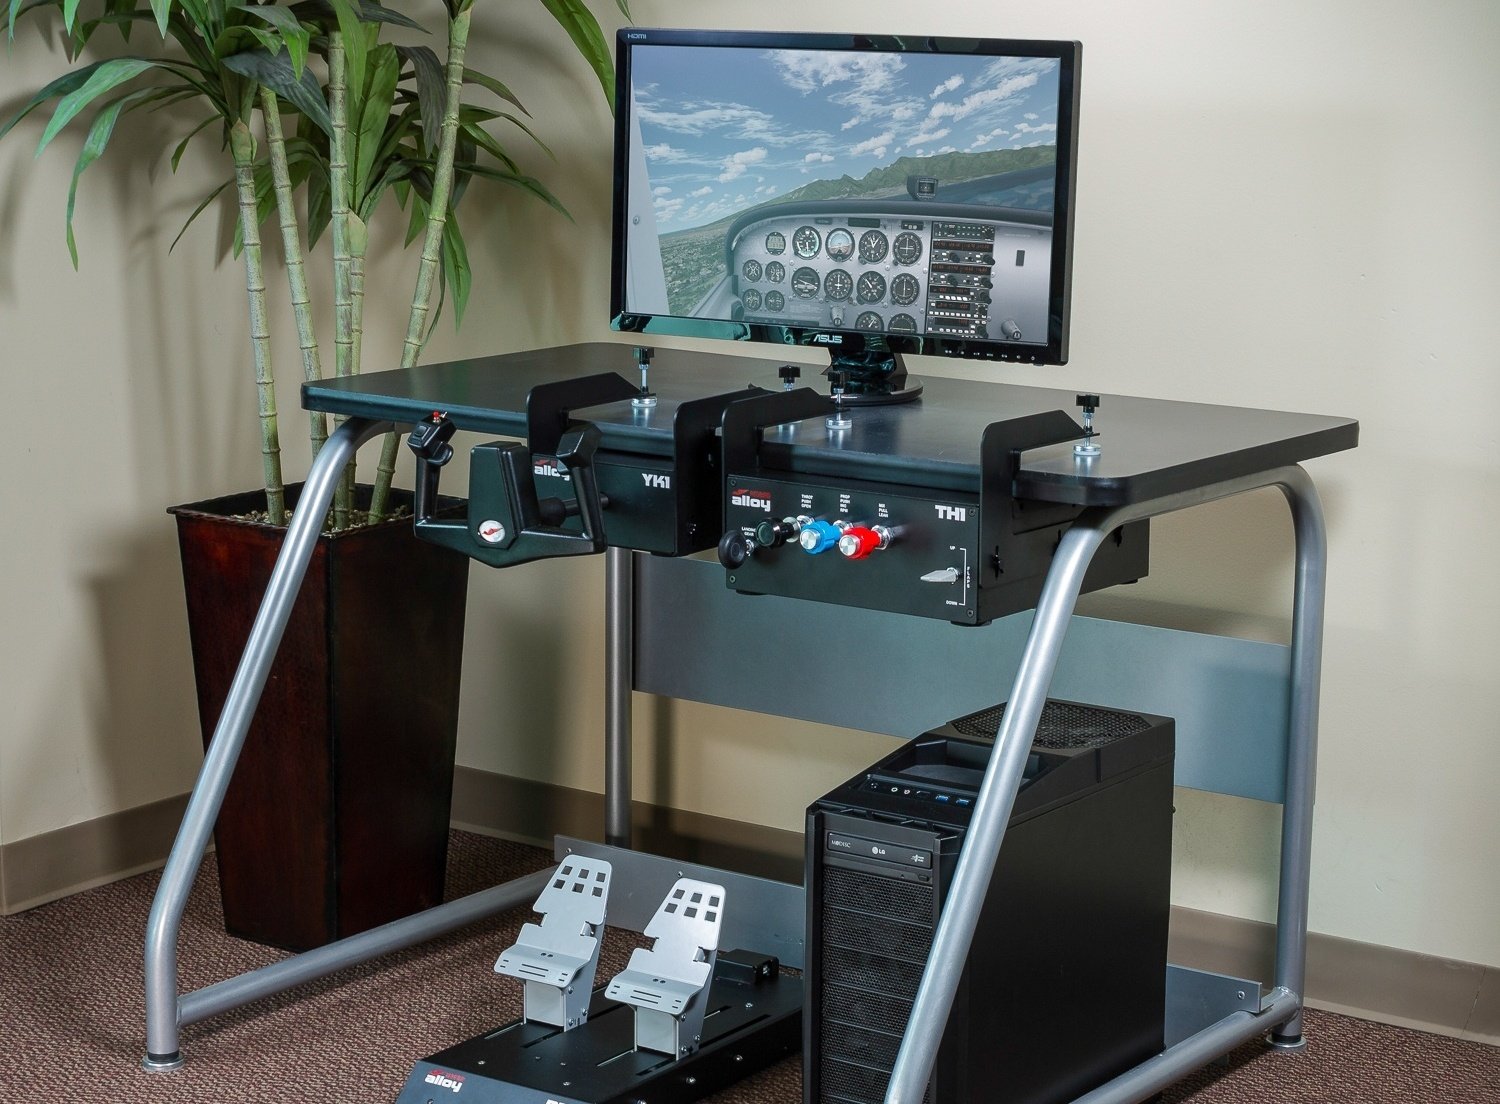 Redbird Alloy flight controls for home flight simulators